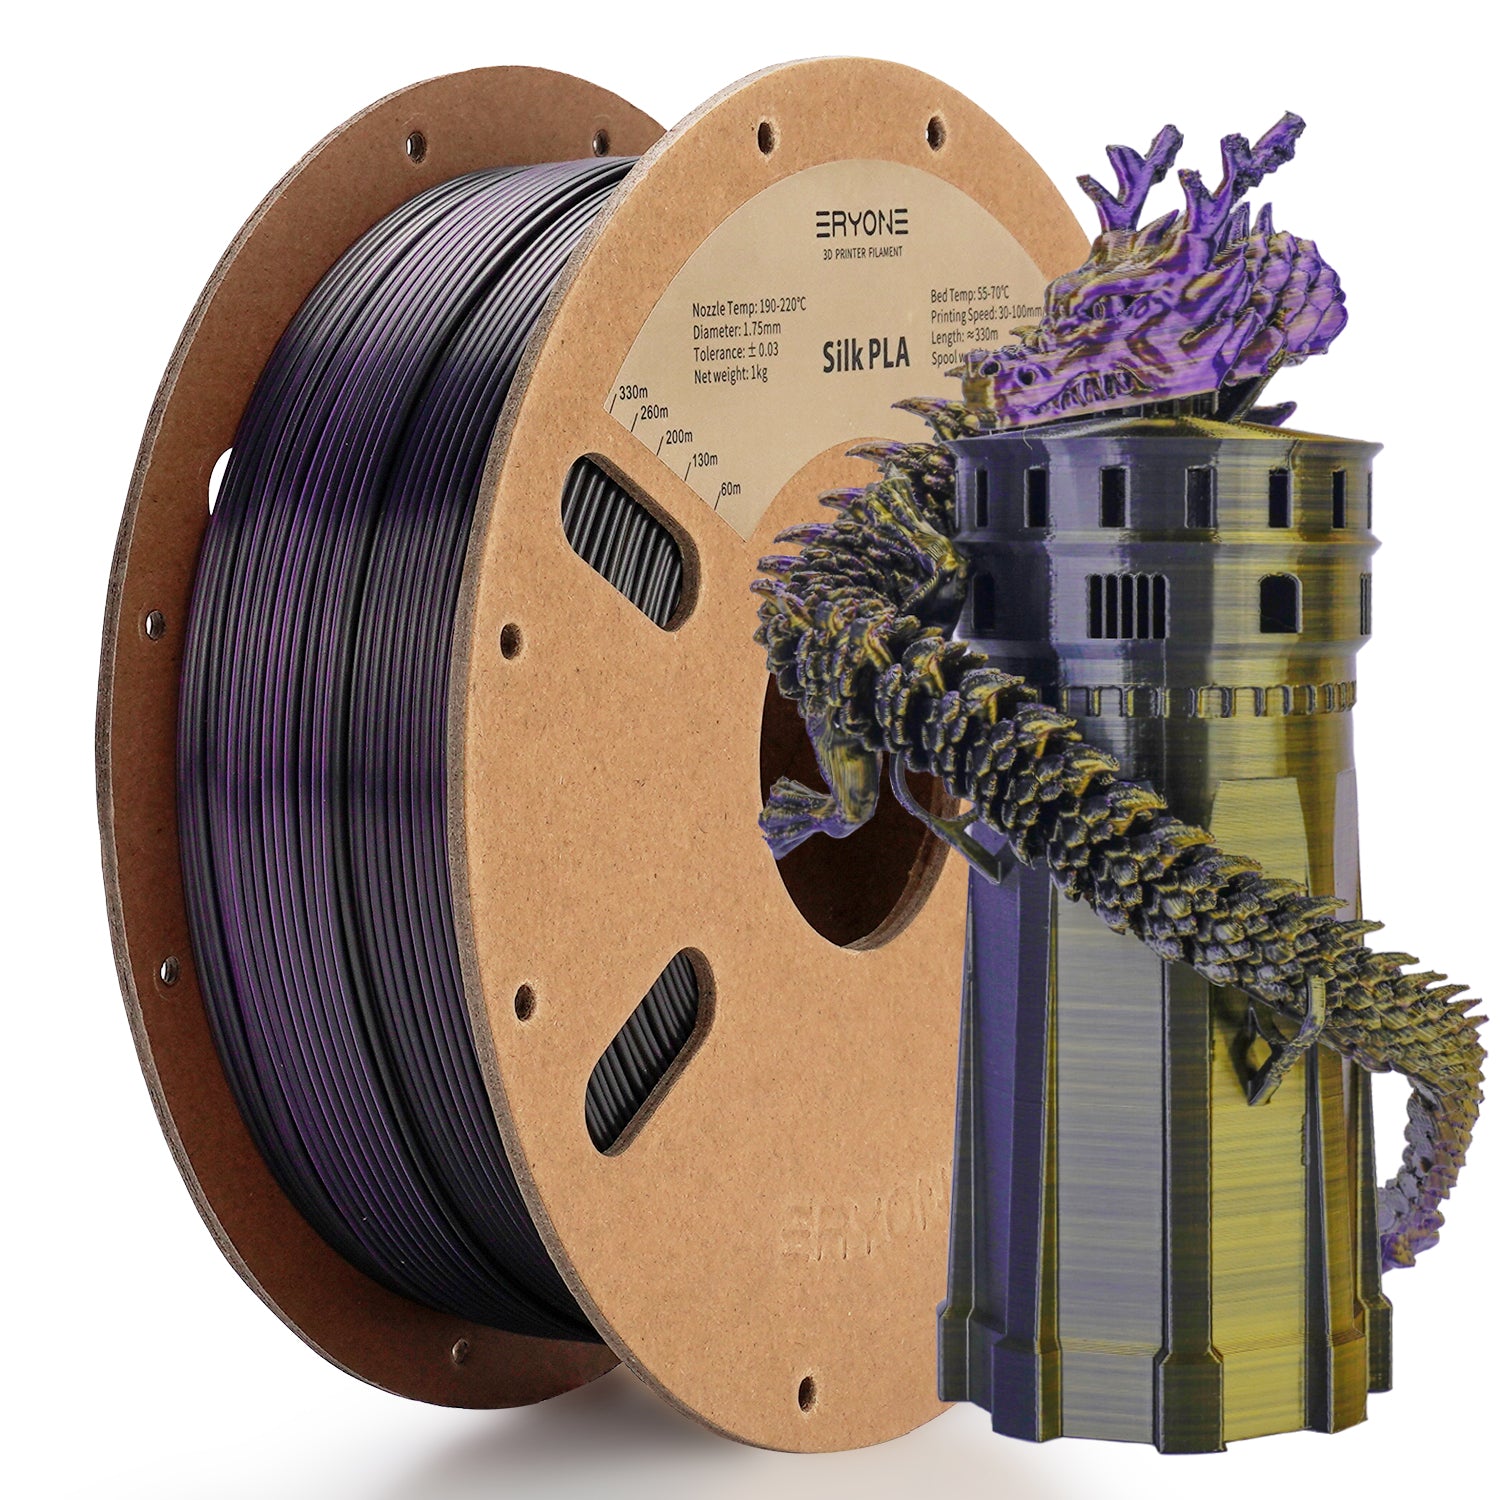 ERYONE Dreifarbiges Seiden-PLA-Filament für 3D-Drucker, 1 kg (2,2 LBS)/Spule 1,75 mm, Genauigkeit +/- 0,03 mm 